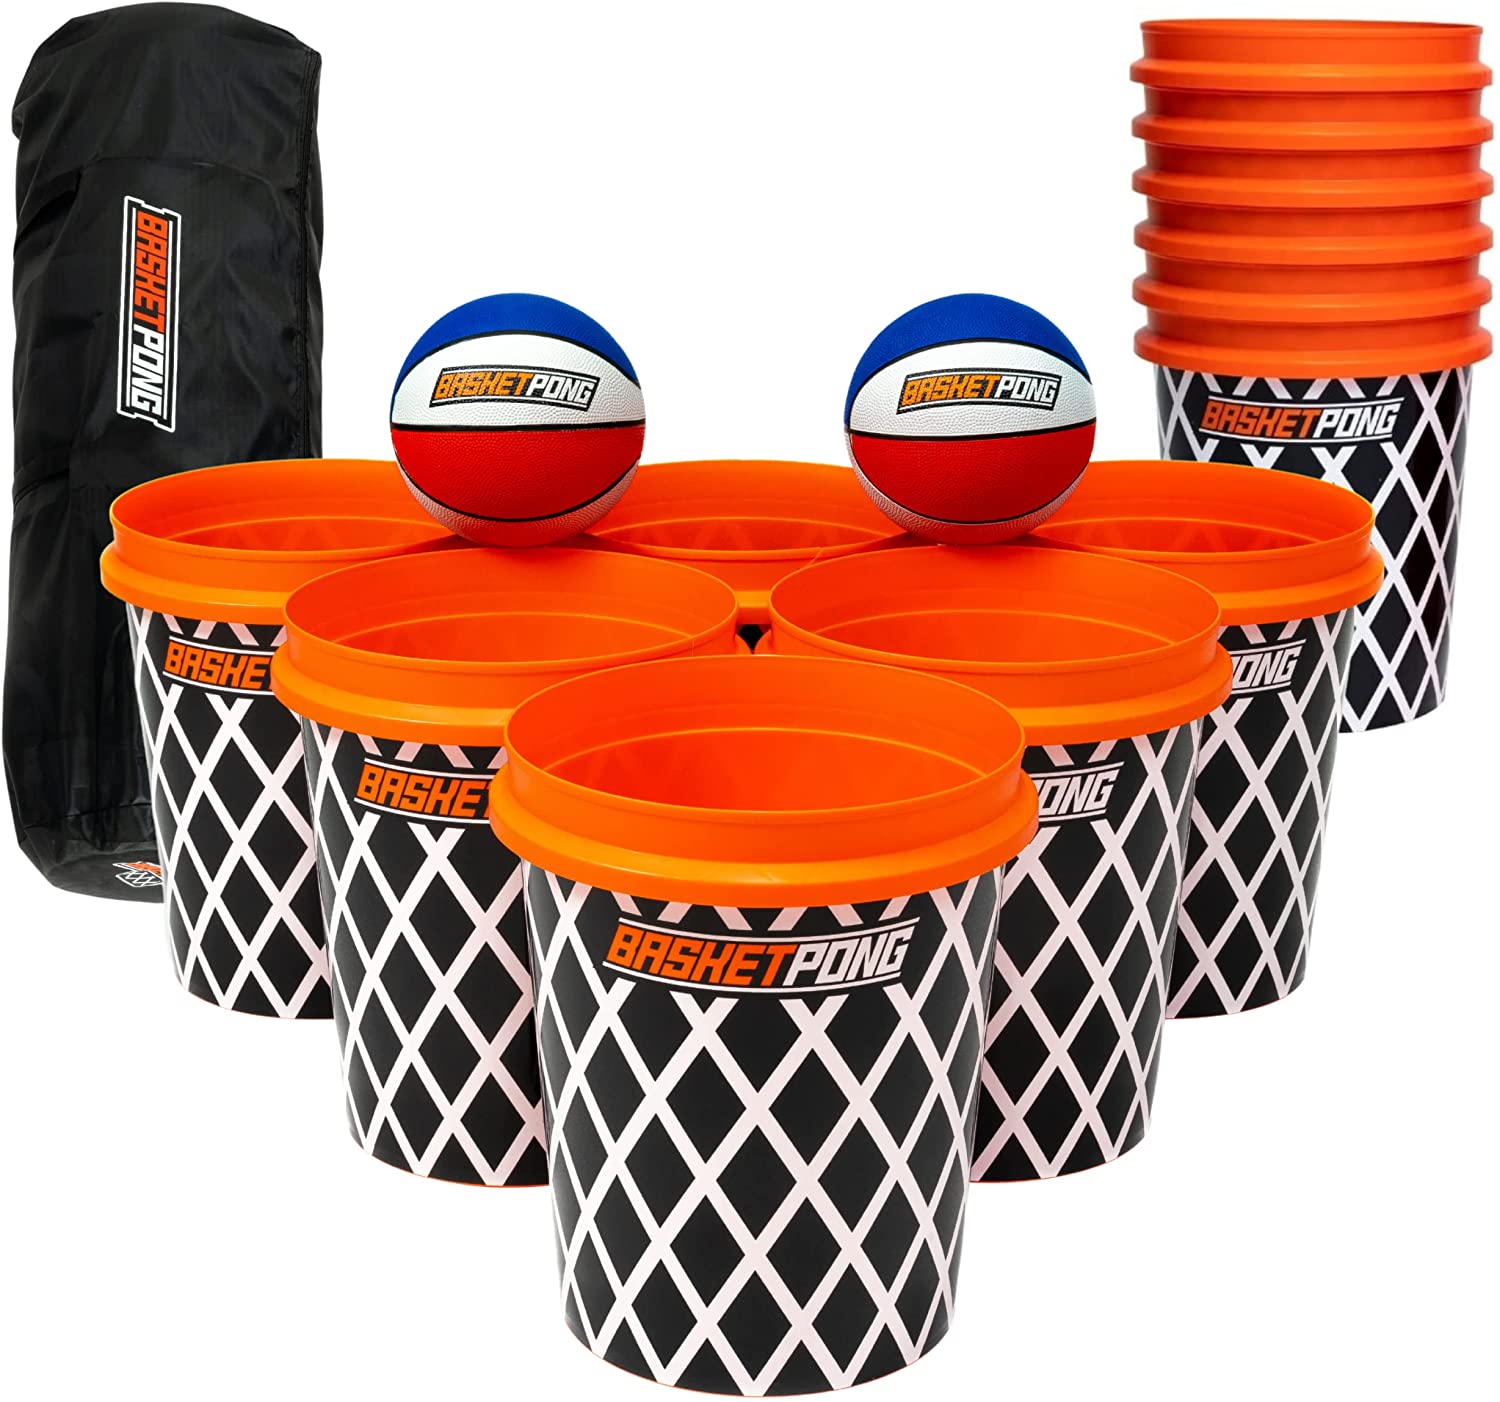 Basket Ball Pong Game